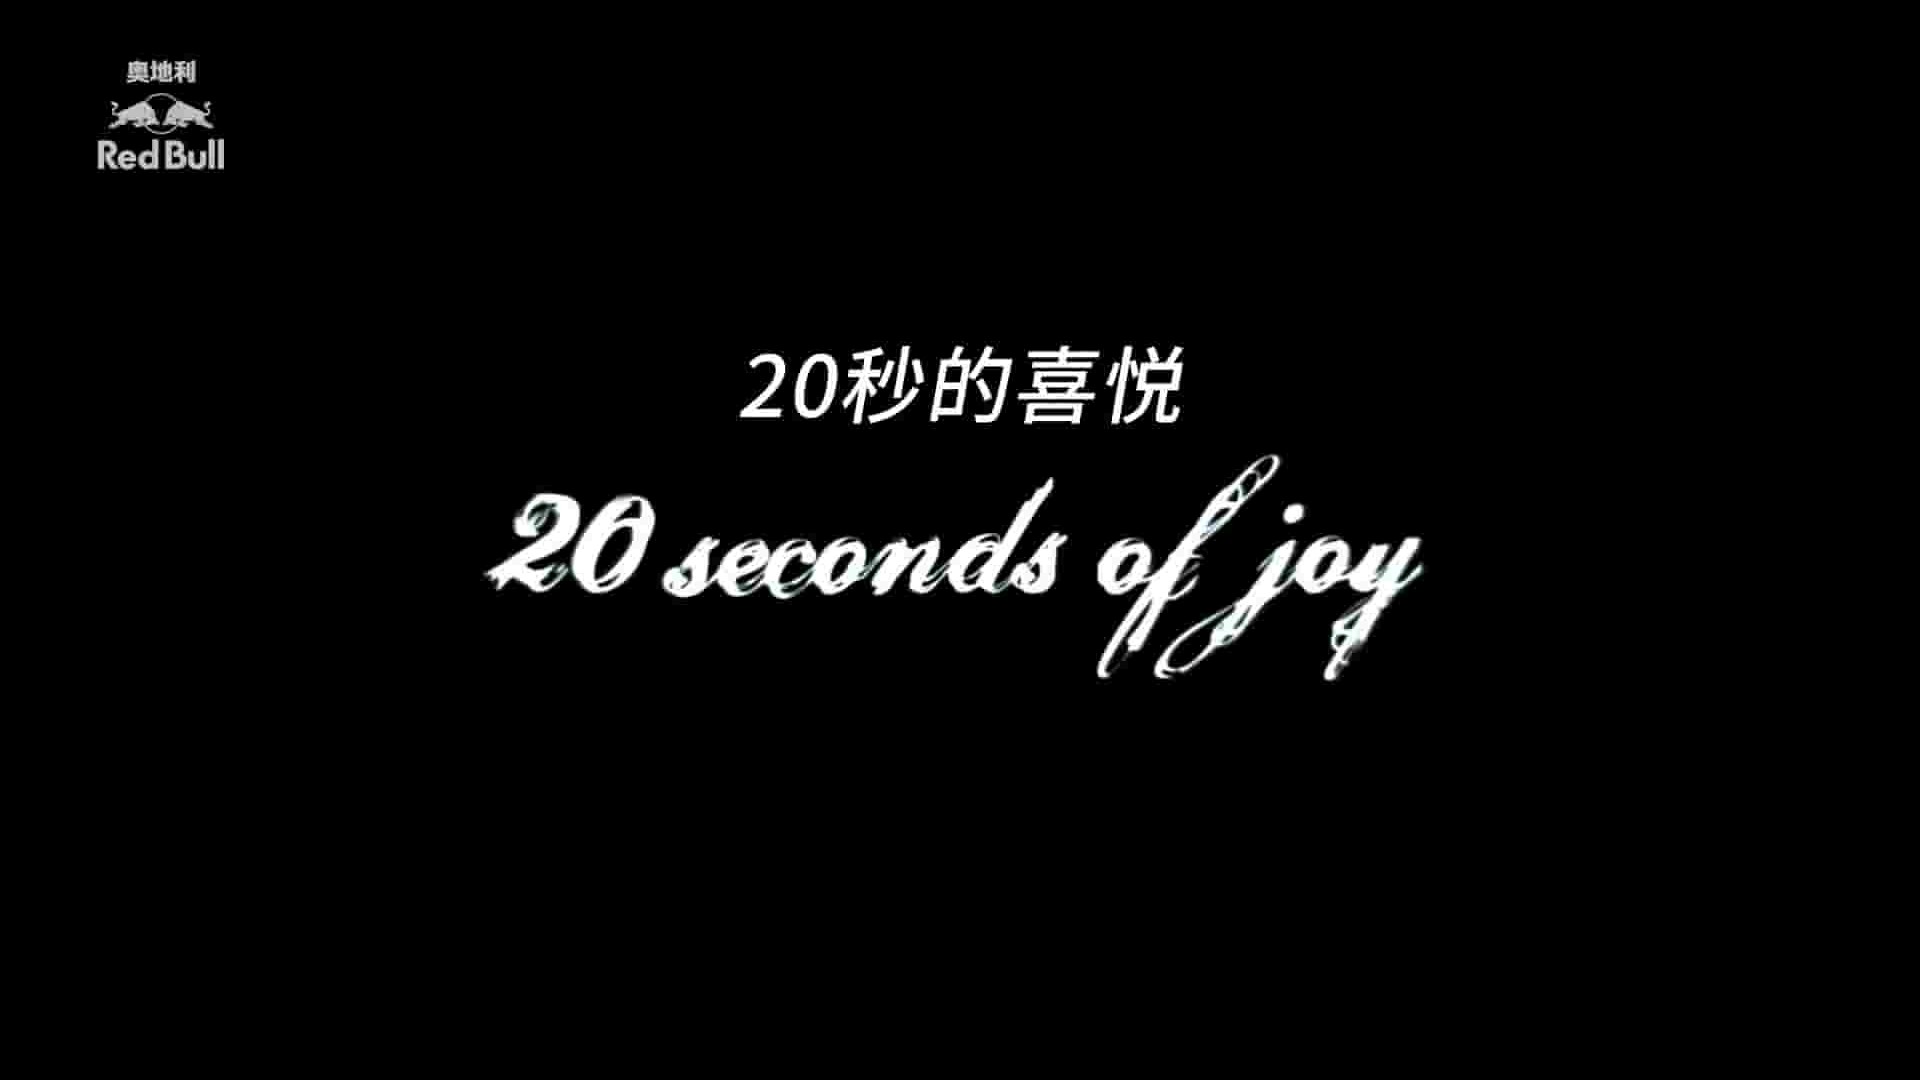 德国纪录片《“落”极生悲/空中20秒 20 Seconds of Joy 2007》全1集  英语中字 1080P高清网盘下载